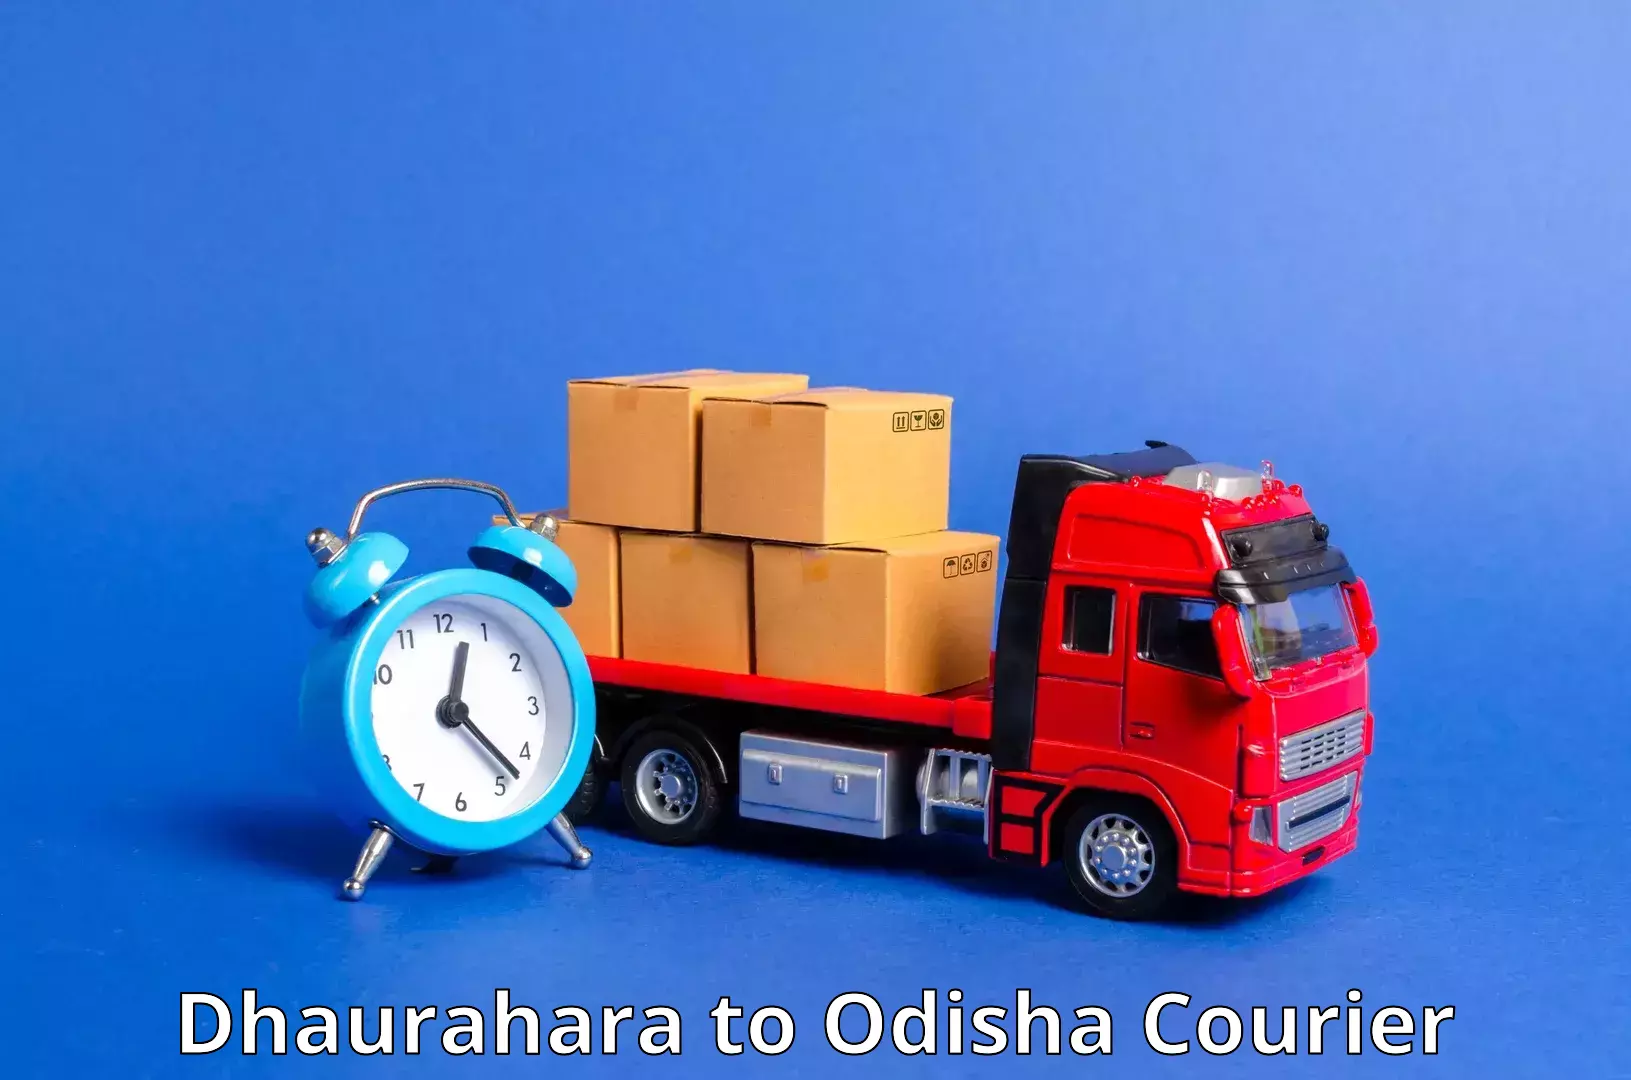 Regular parcel service Dhaurahara to Komana